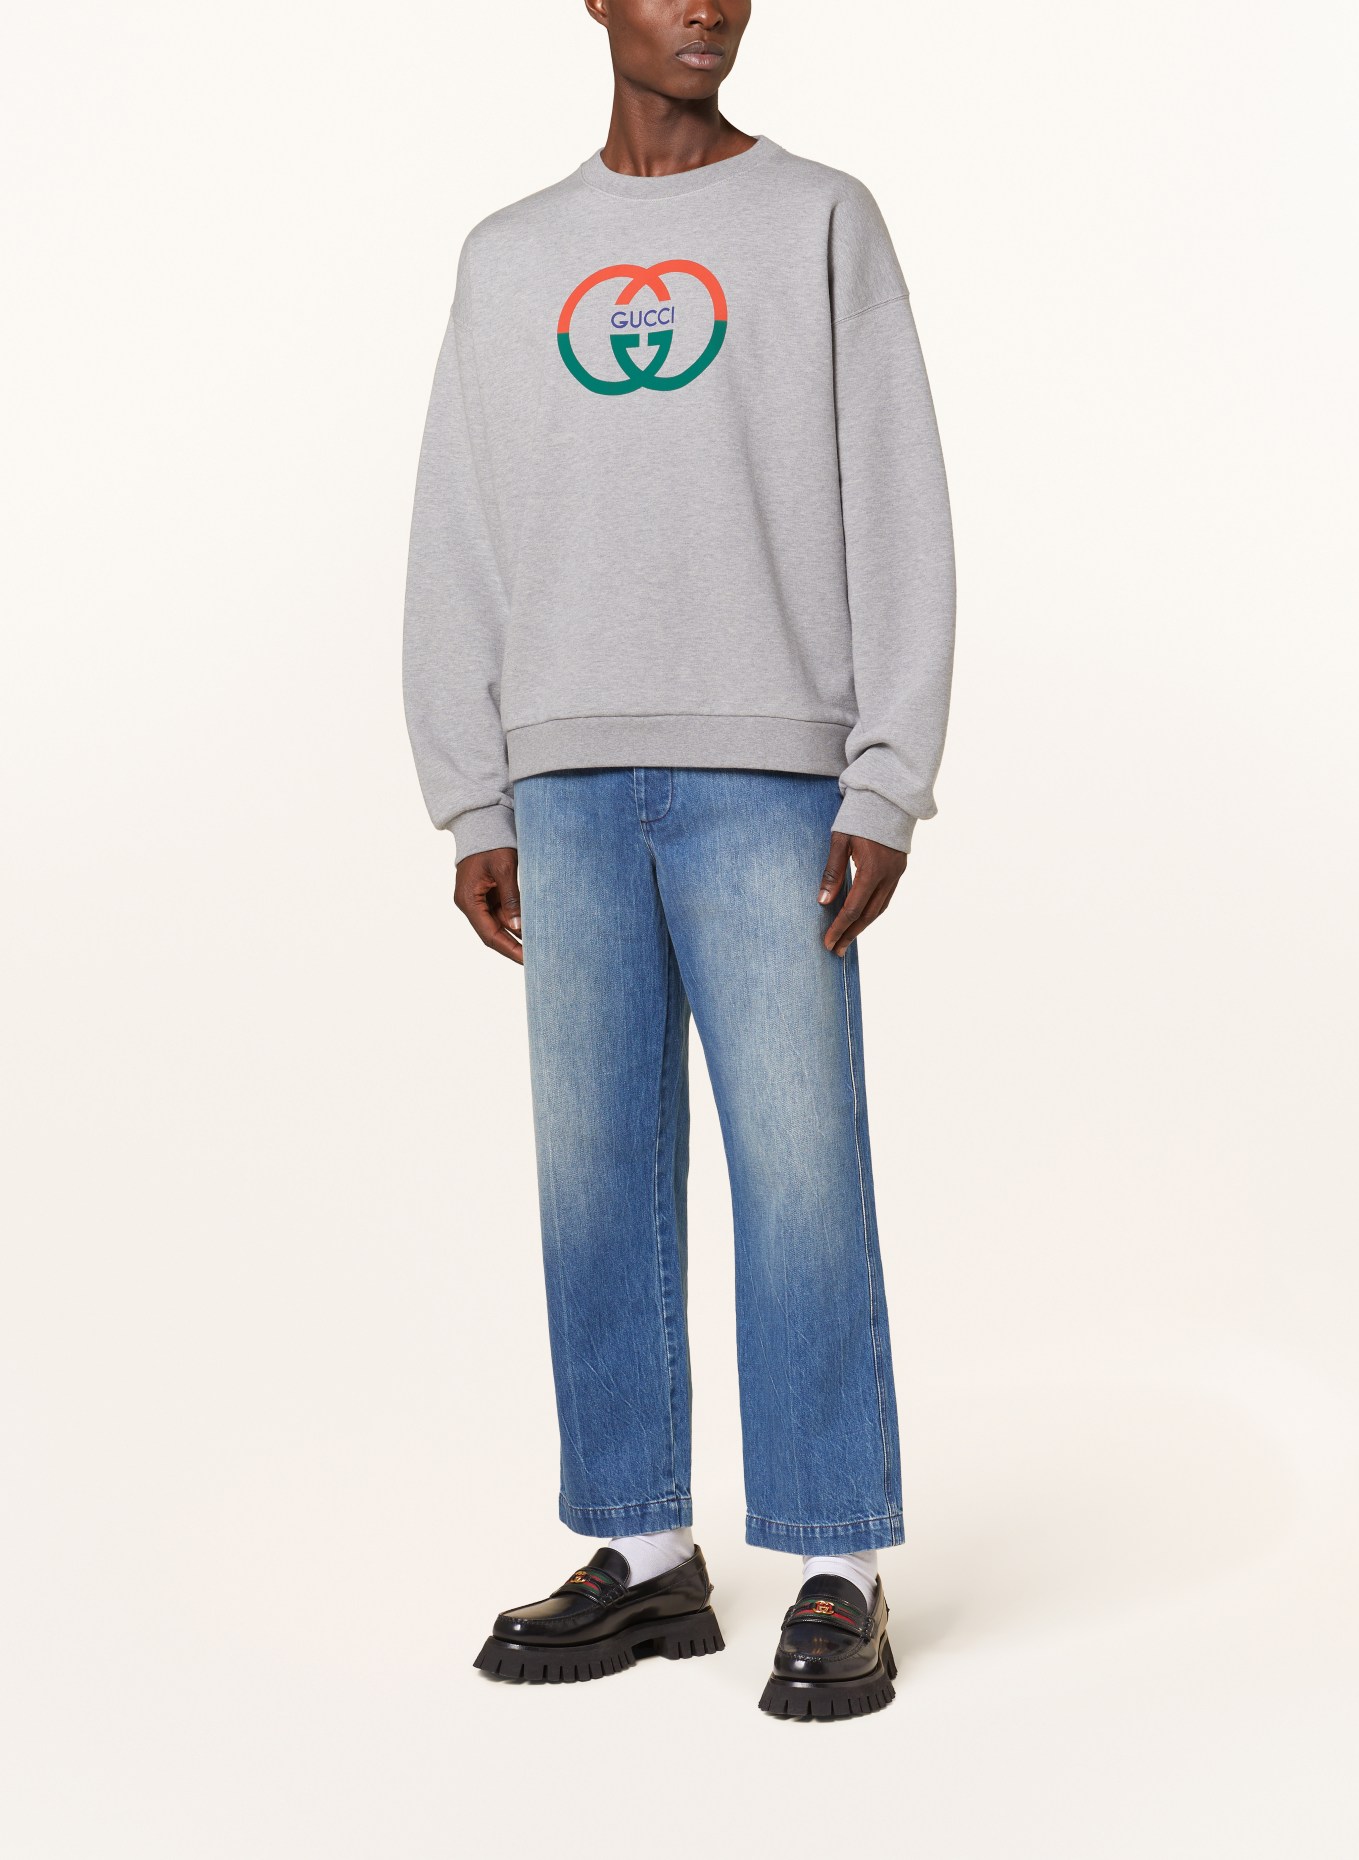 GUCCI Sweatshirt, Color: GRAY (Image 2)